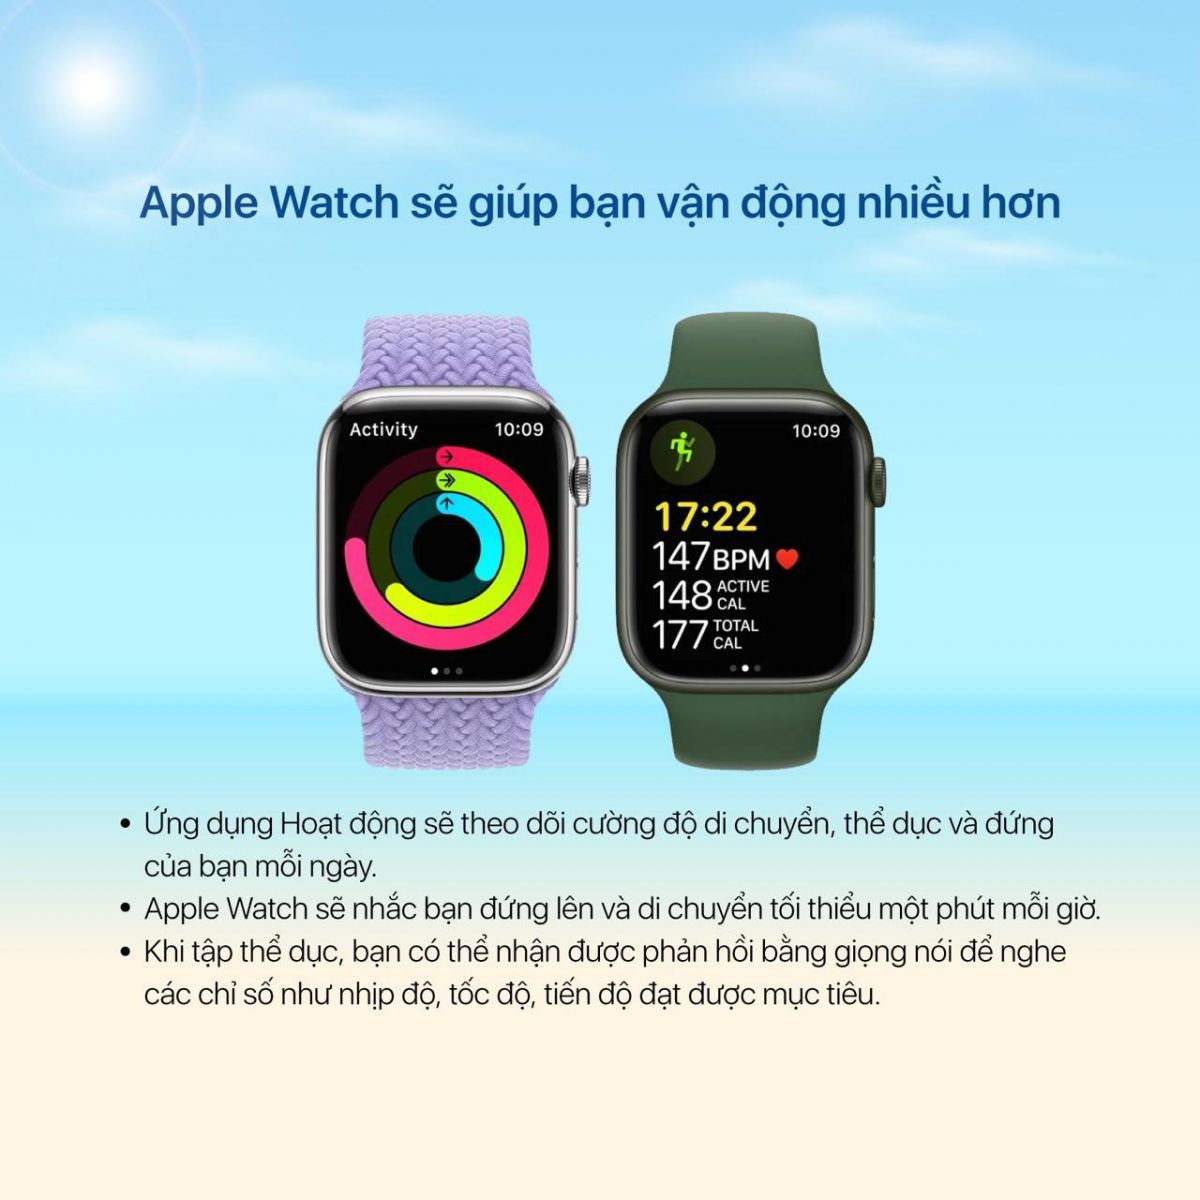 Apple Watch sẽ giúp bạn vận động nhiều hơn